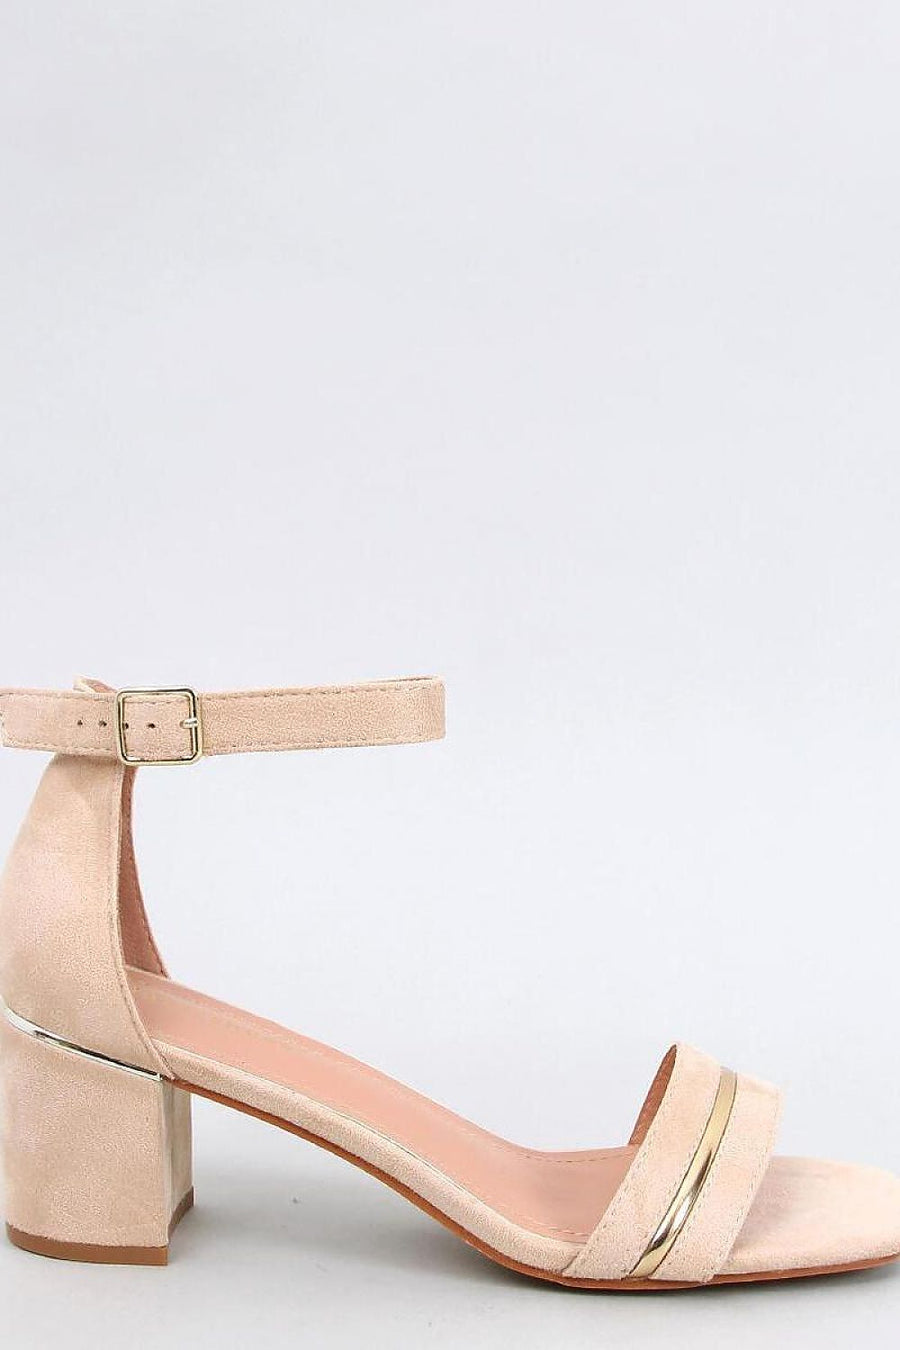 Sandalen mit Absatz Model 196017 Inello